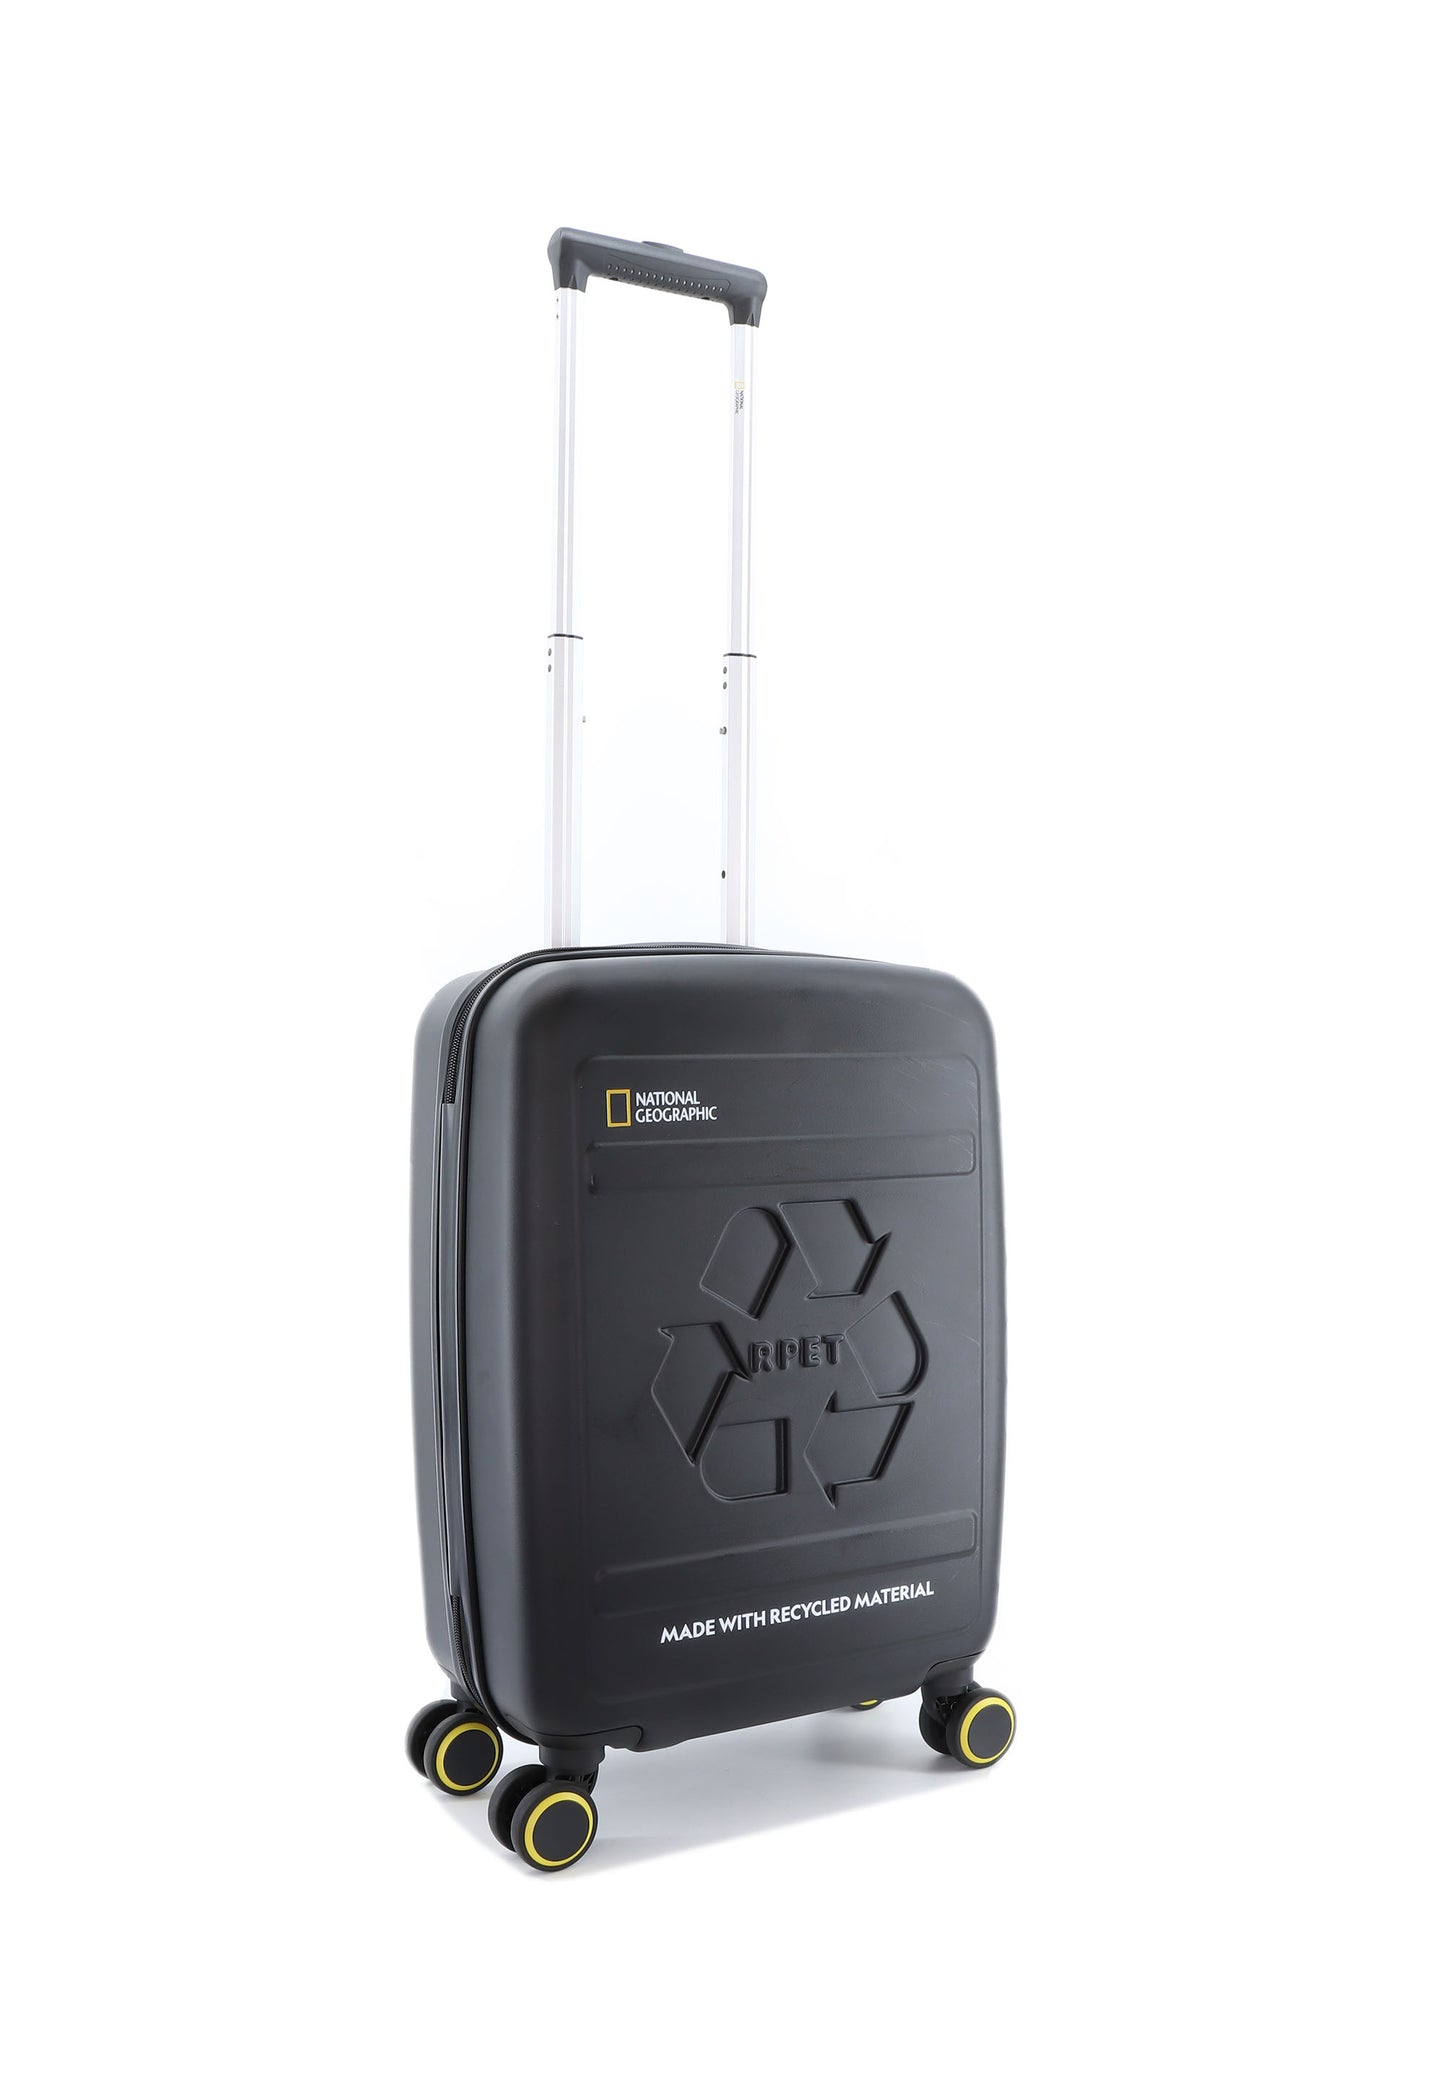 Valise rigide pour bagage à main National Geographic / Trolley / Valise de voyage - 55 cm (Petite) - Balance rPET - Noir